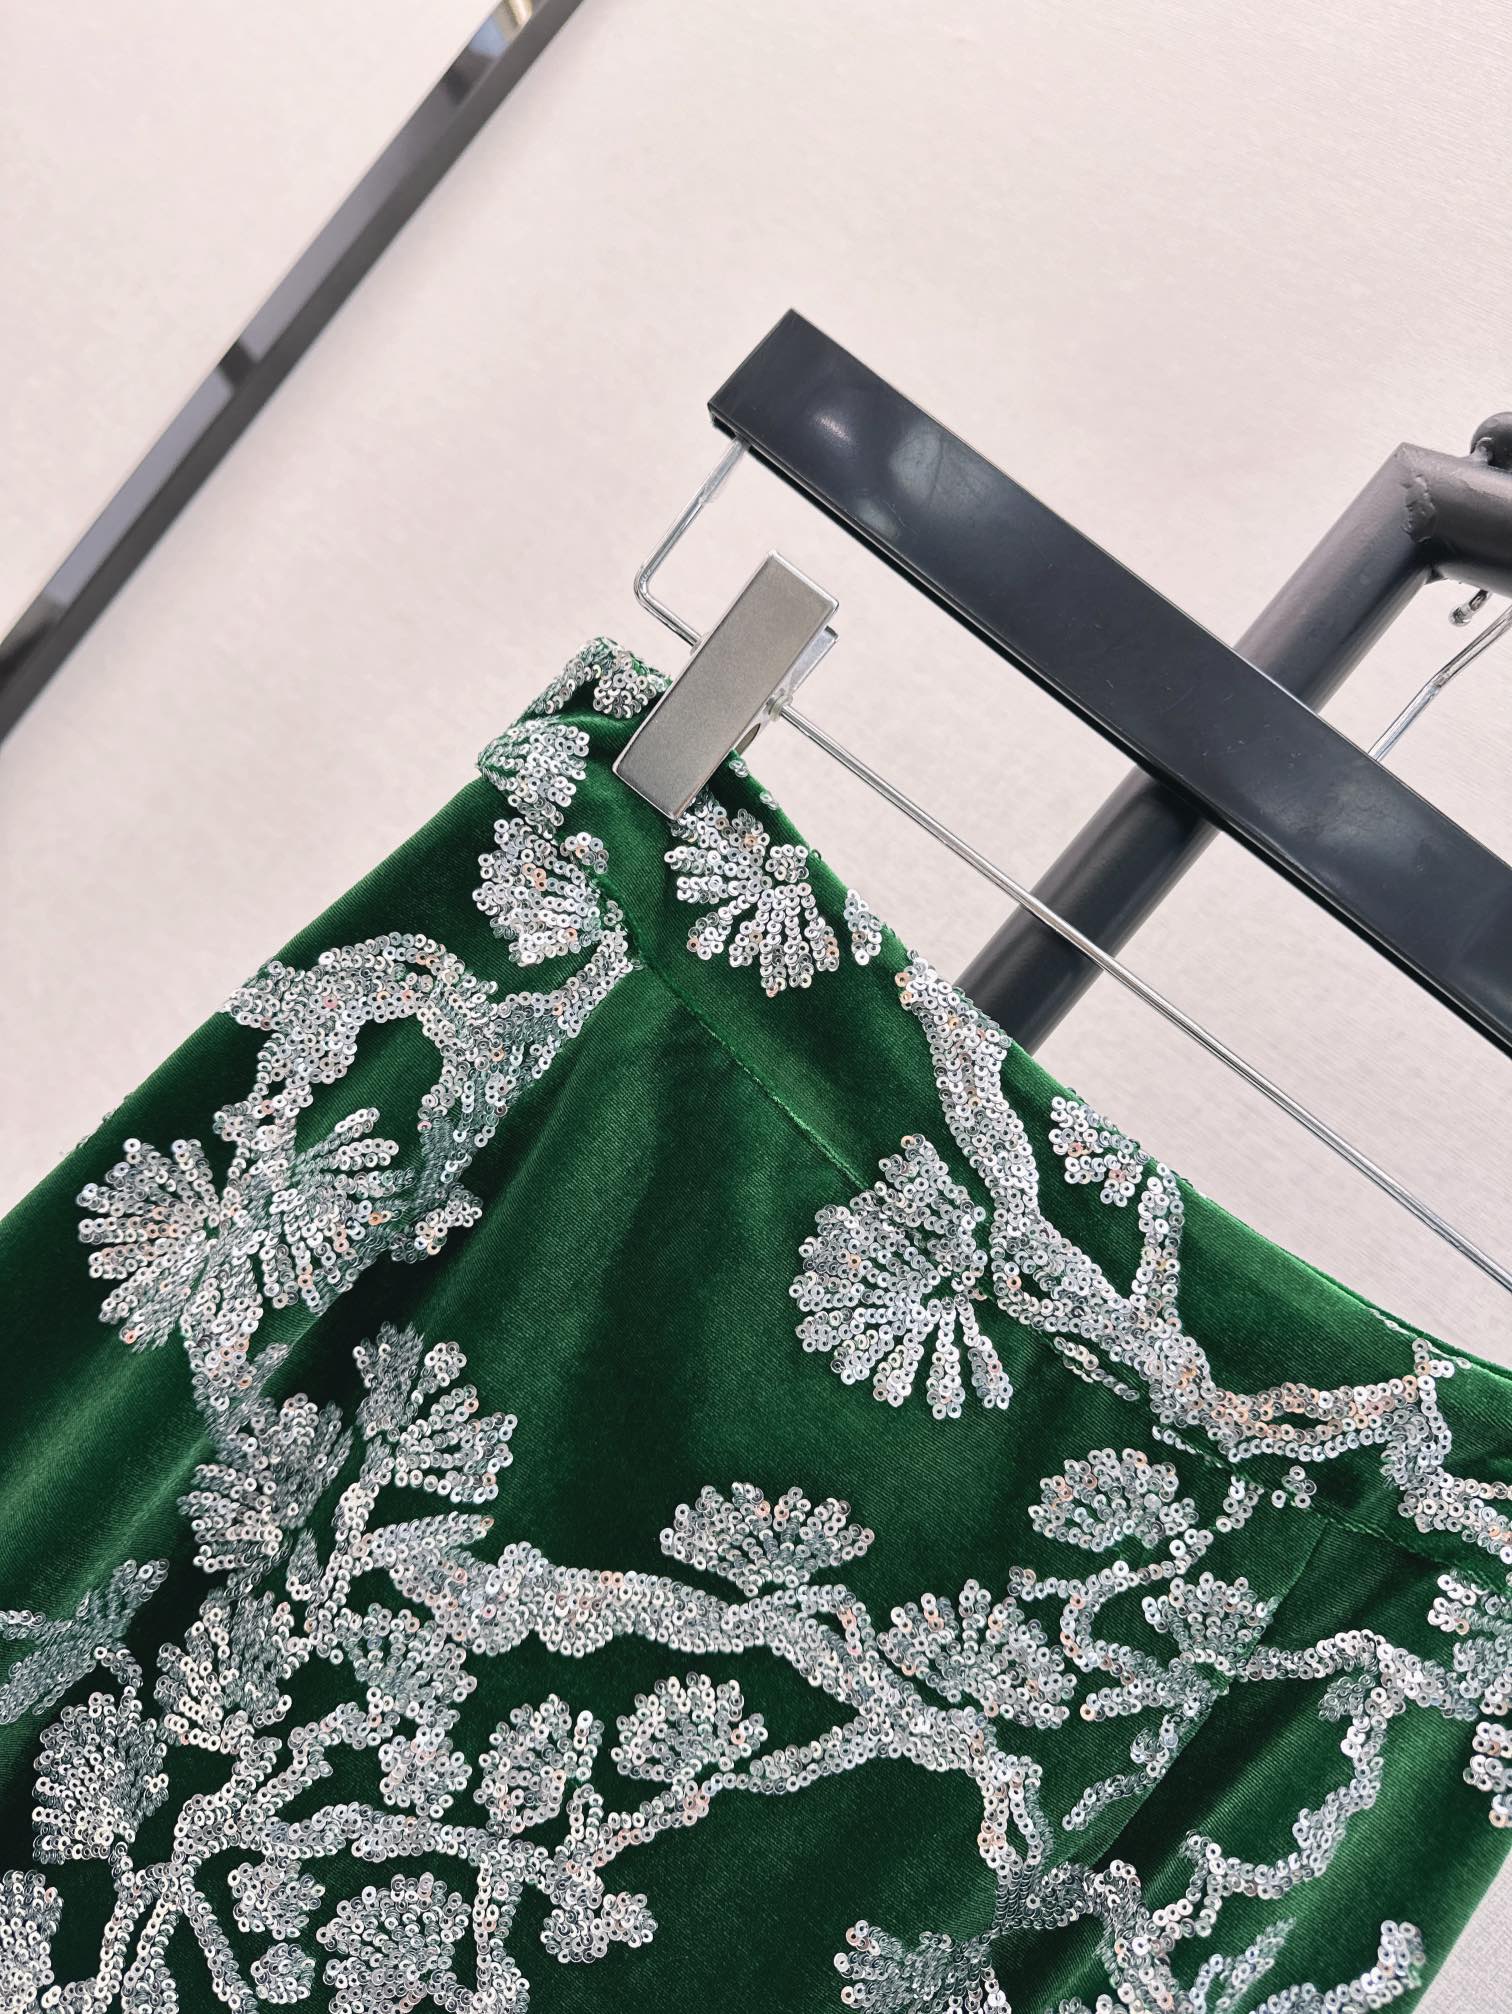 时髦小众设计24Ss春夏最新款祖母绿重磅丝绒半裙是我贵族奶奶的祖母绿呀超级正超级美的丝绒珠片面料我家用的